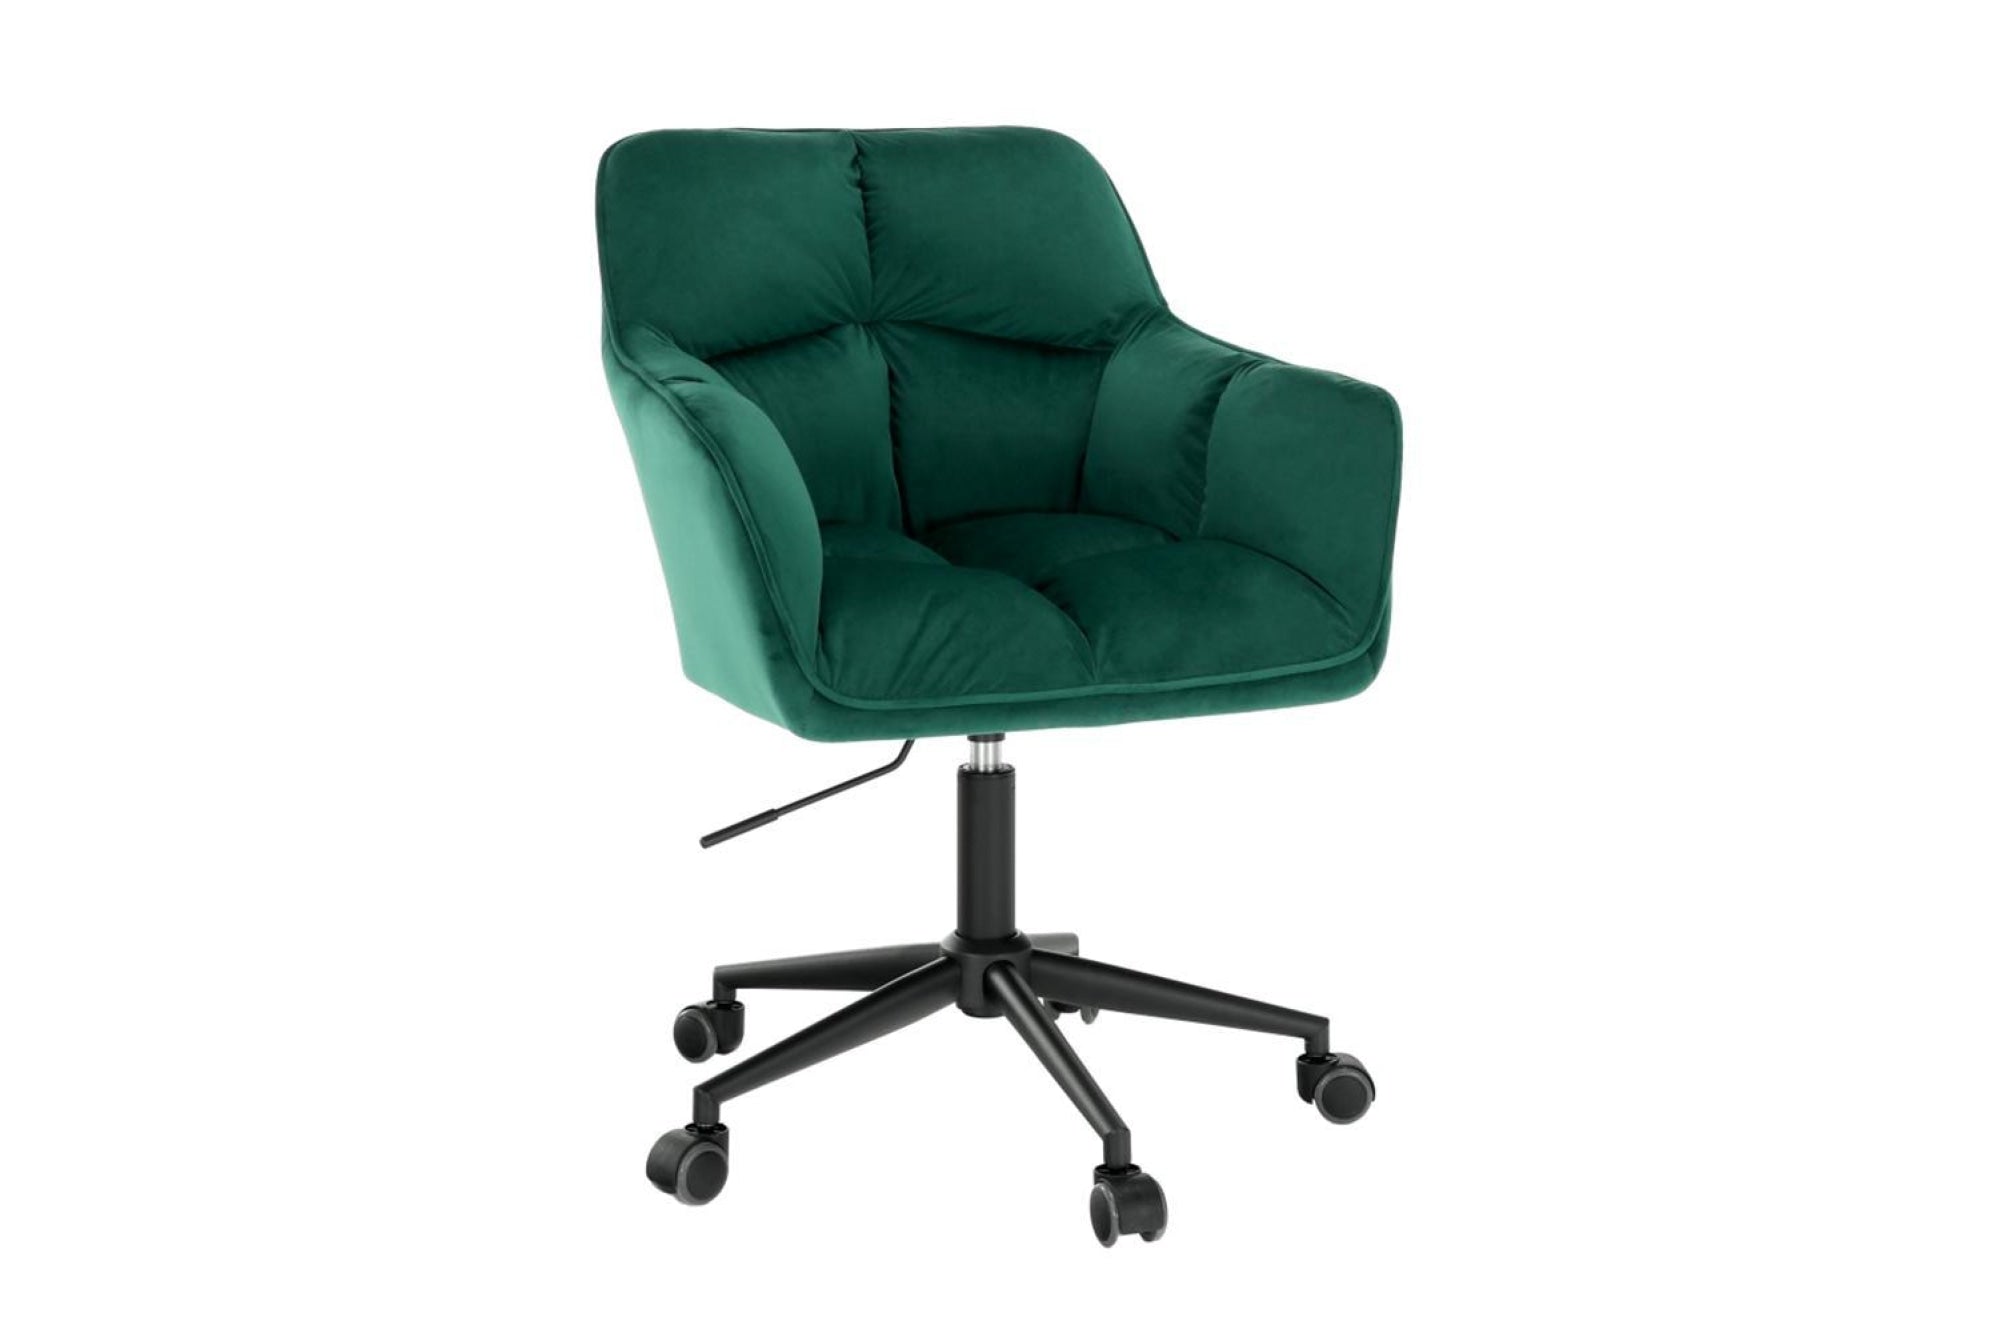 HAGRID zöld szövet irodai szék